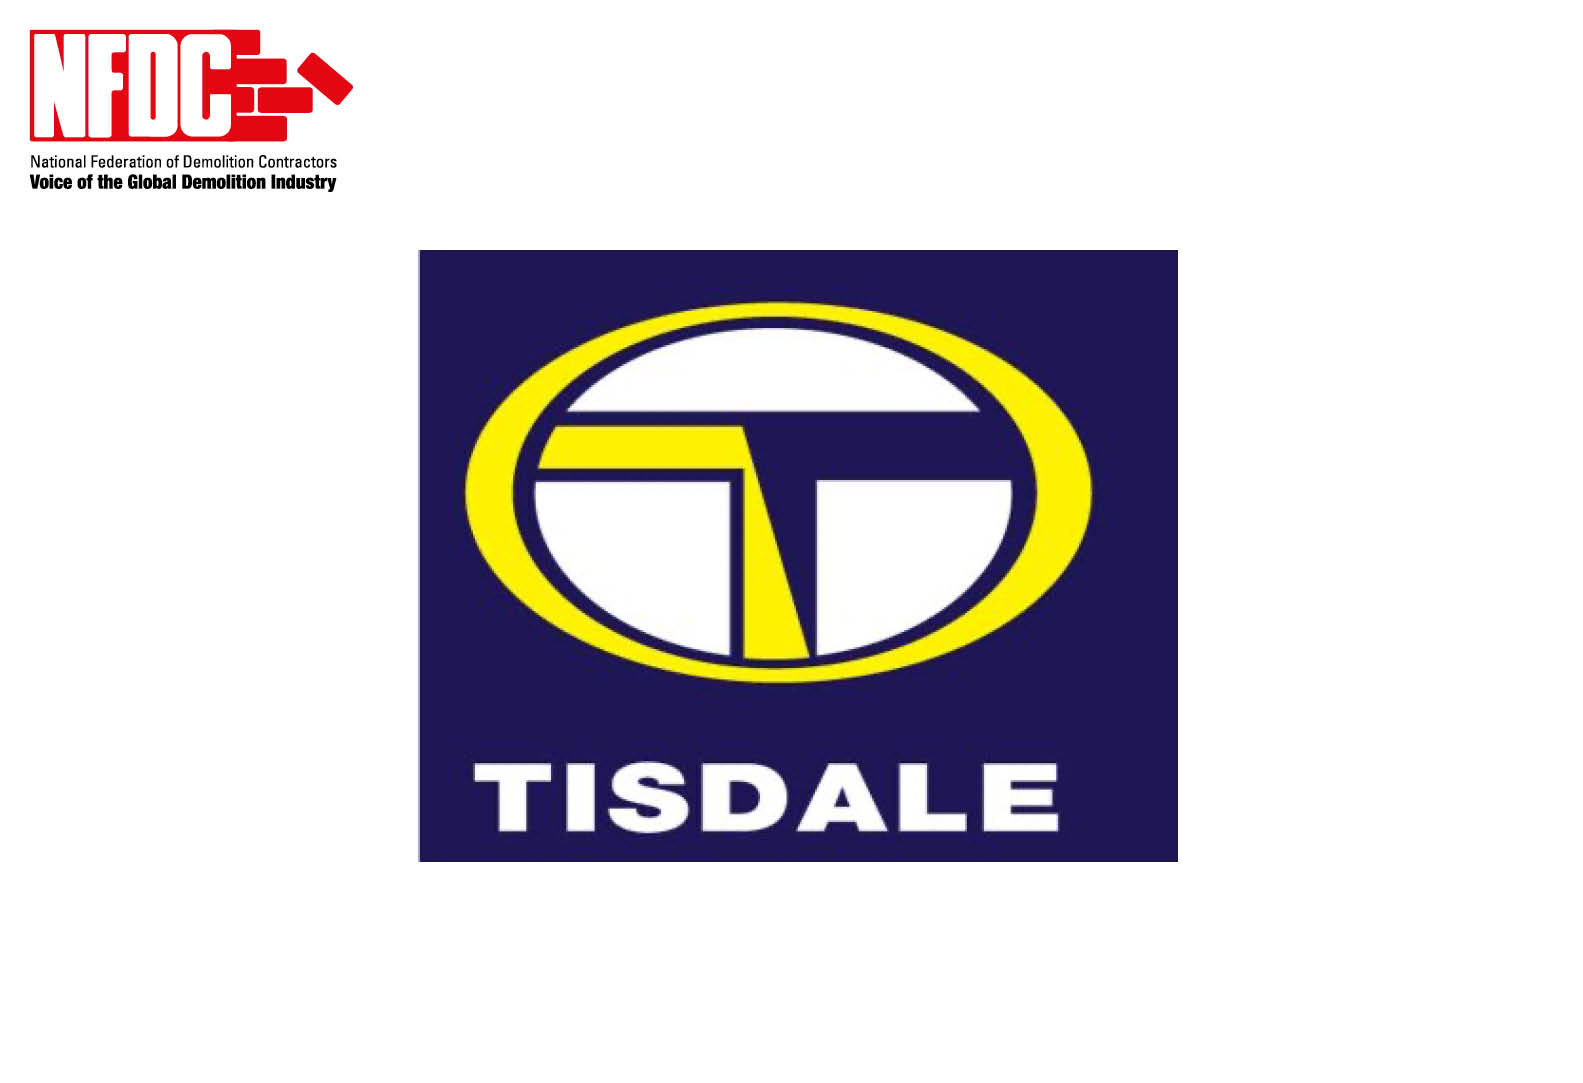 J P Tisdale (Demolition) Ltd